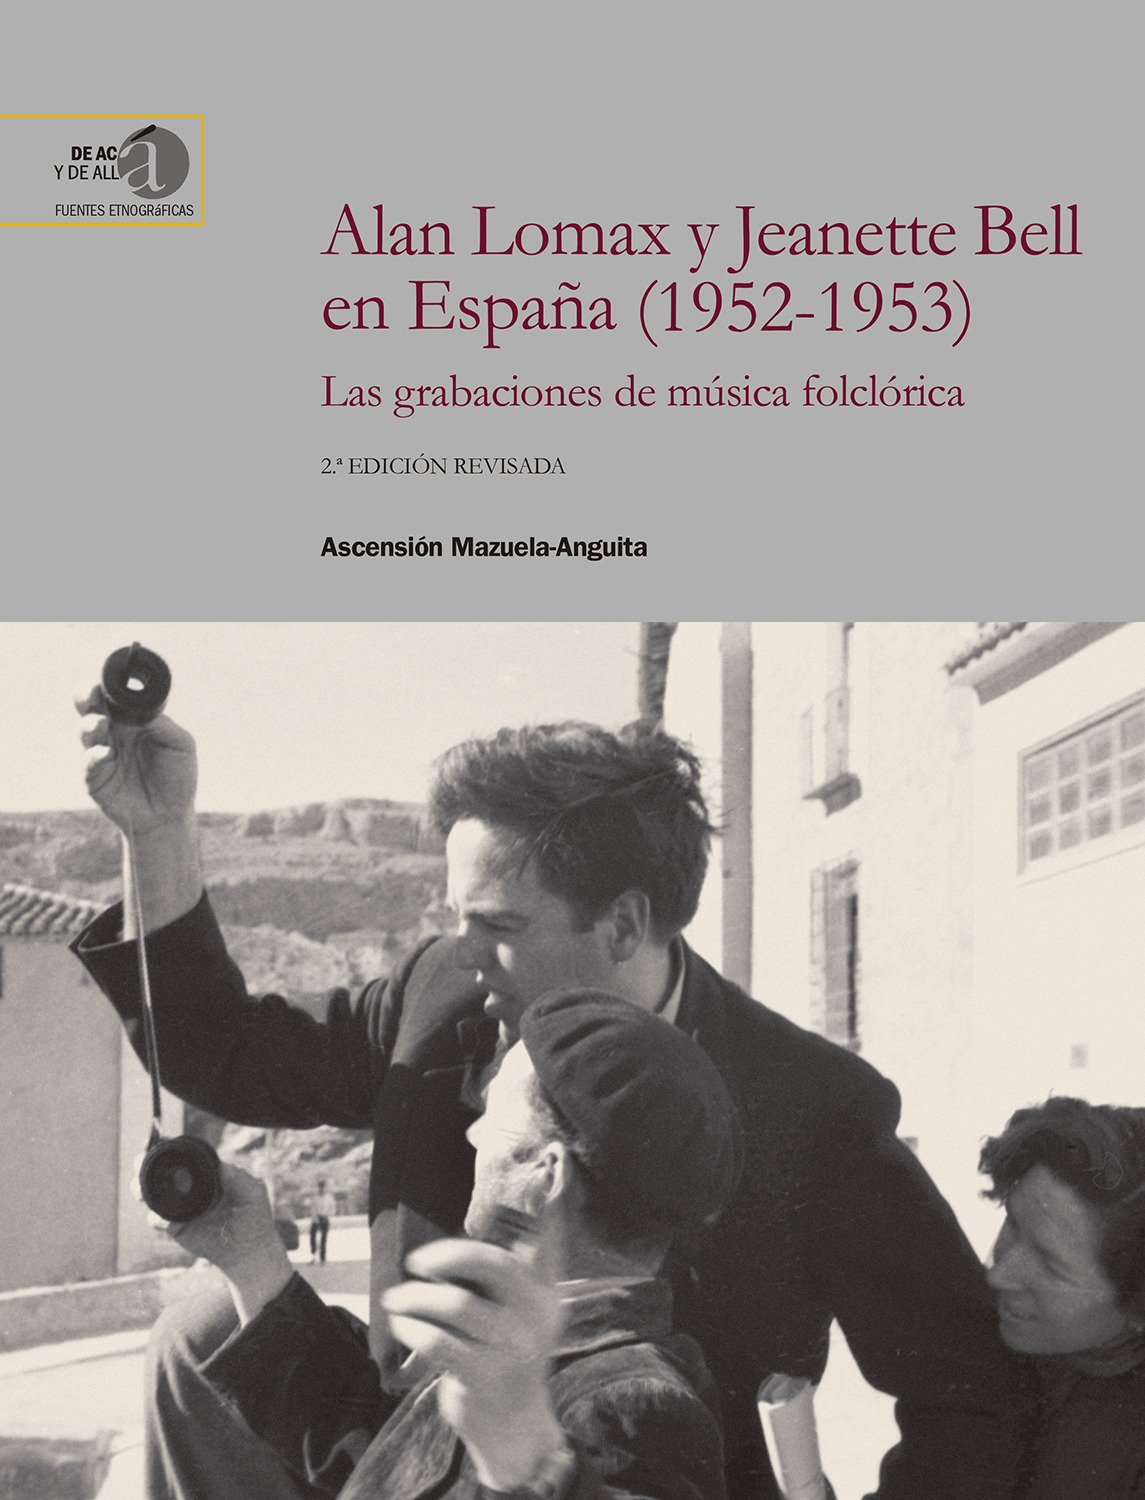 Alan Lomax y Jeanette Bell en España (1952-1953) 